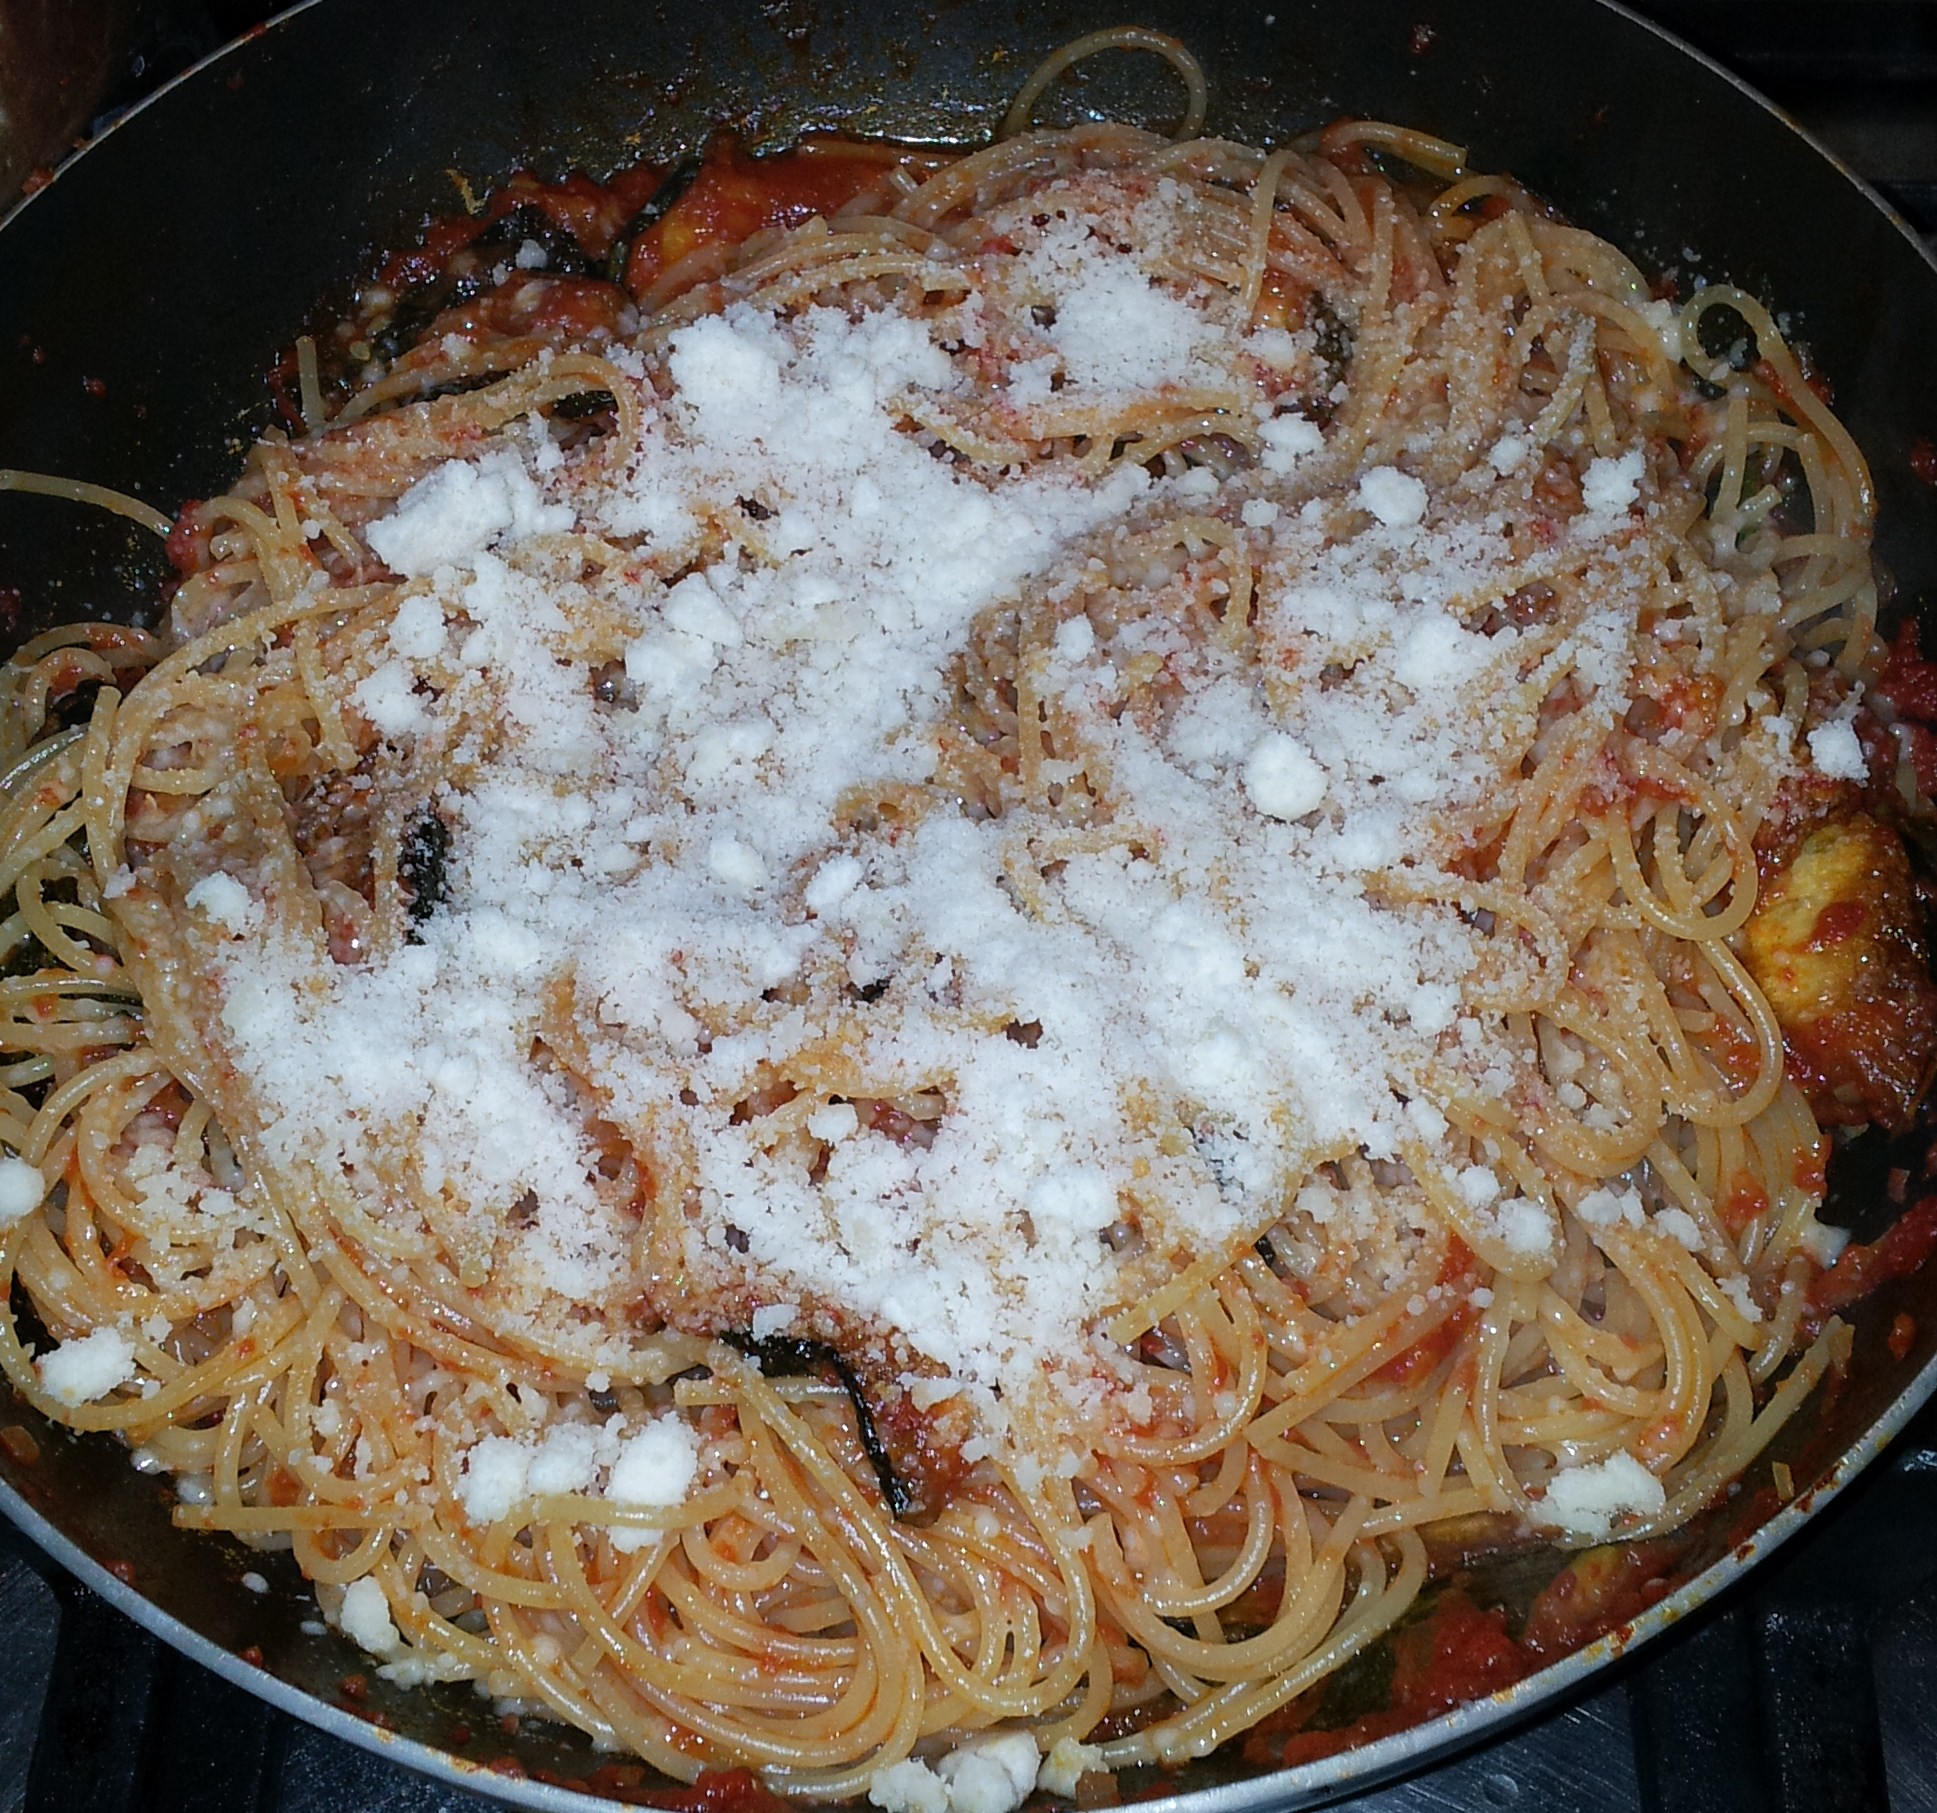 Spaghete cu sos de rosii coapte si dovlecei prajiti.